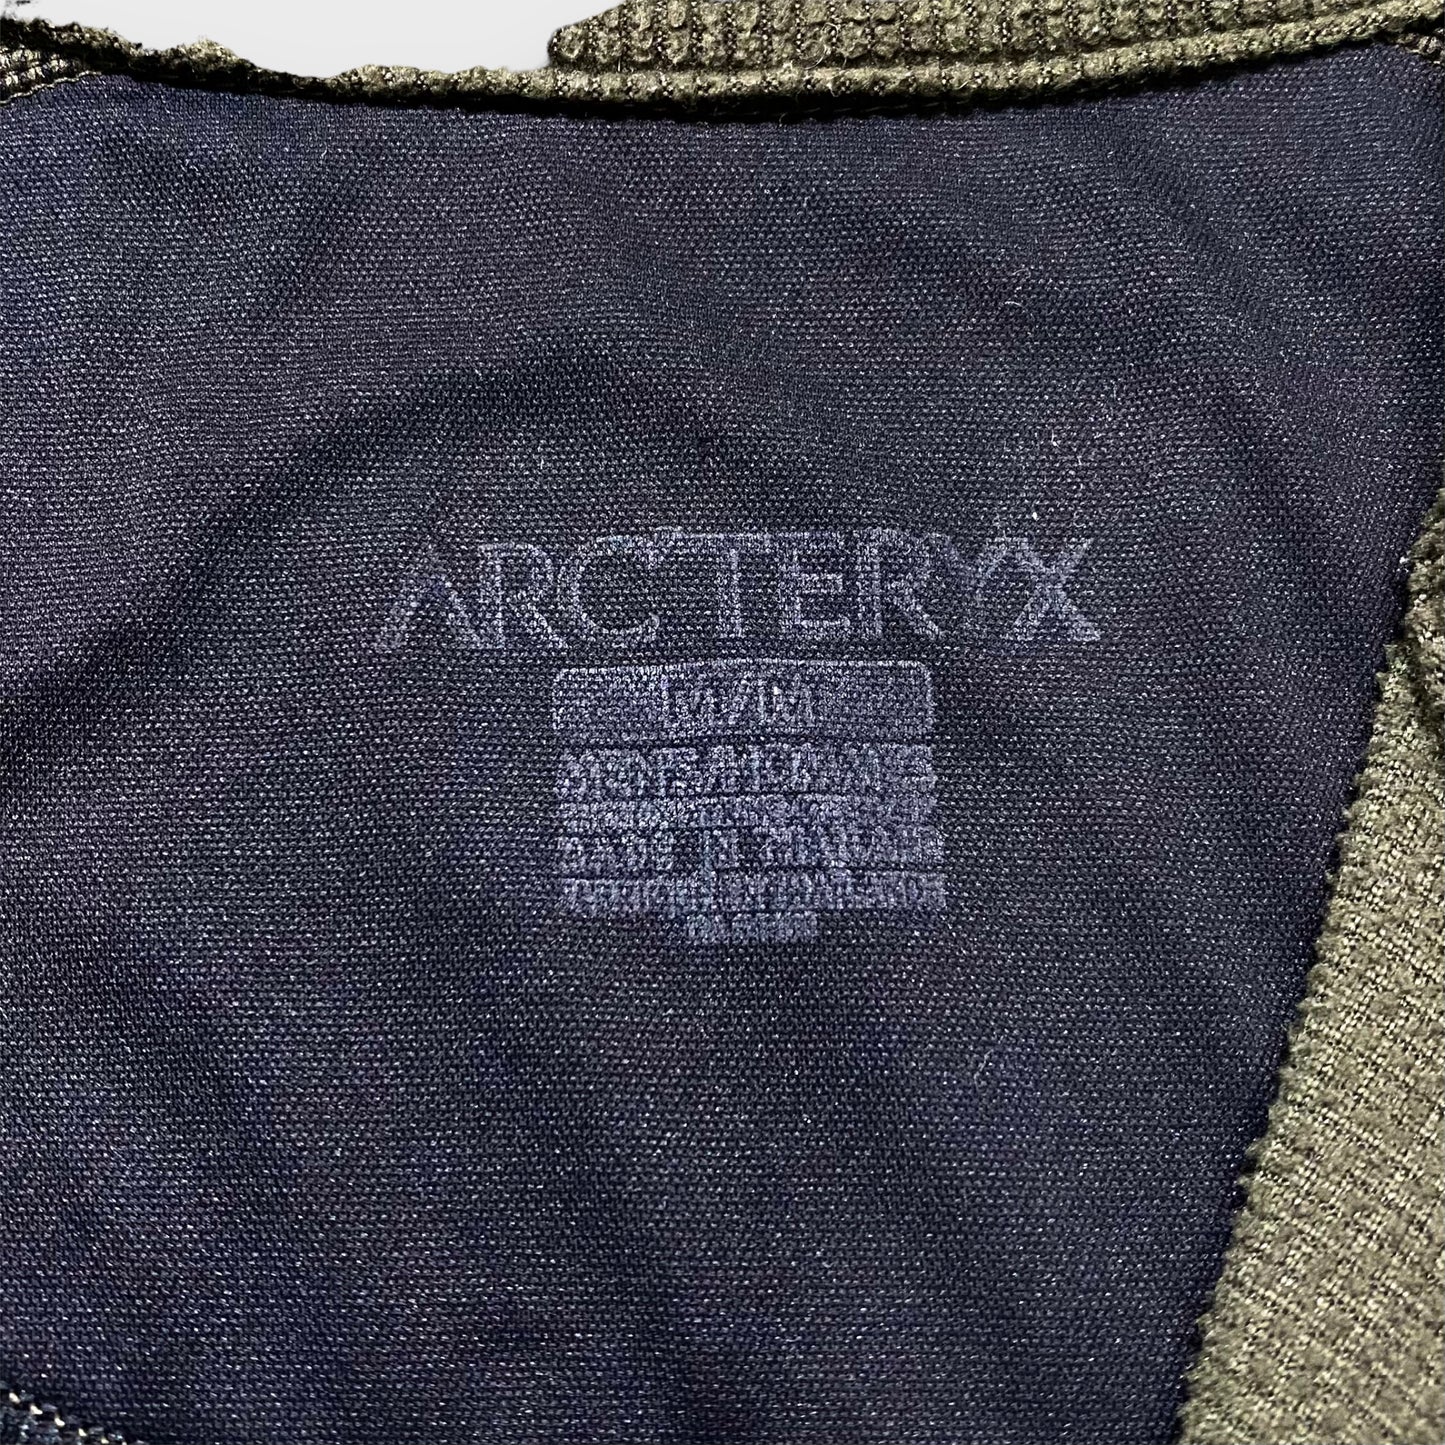 00's "Arc'teryx" Half zip thermal top